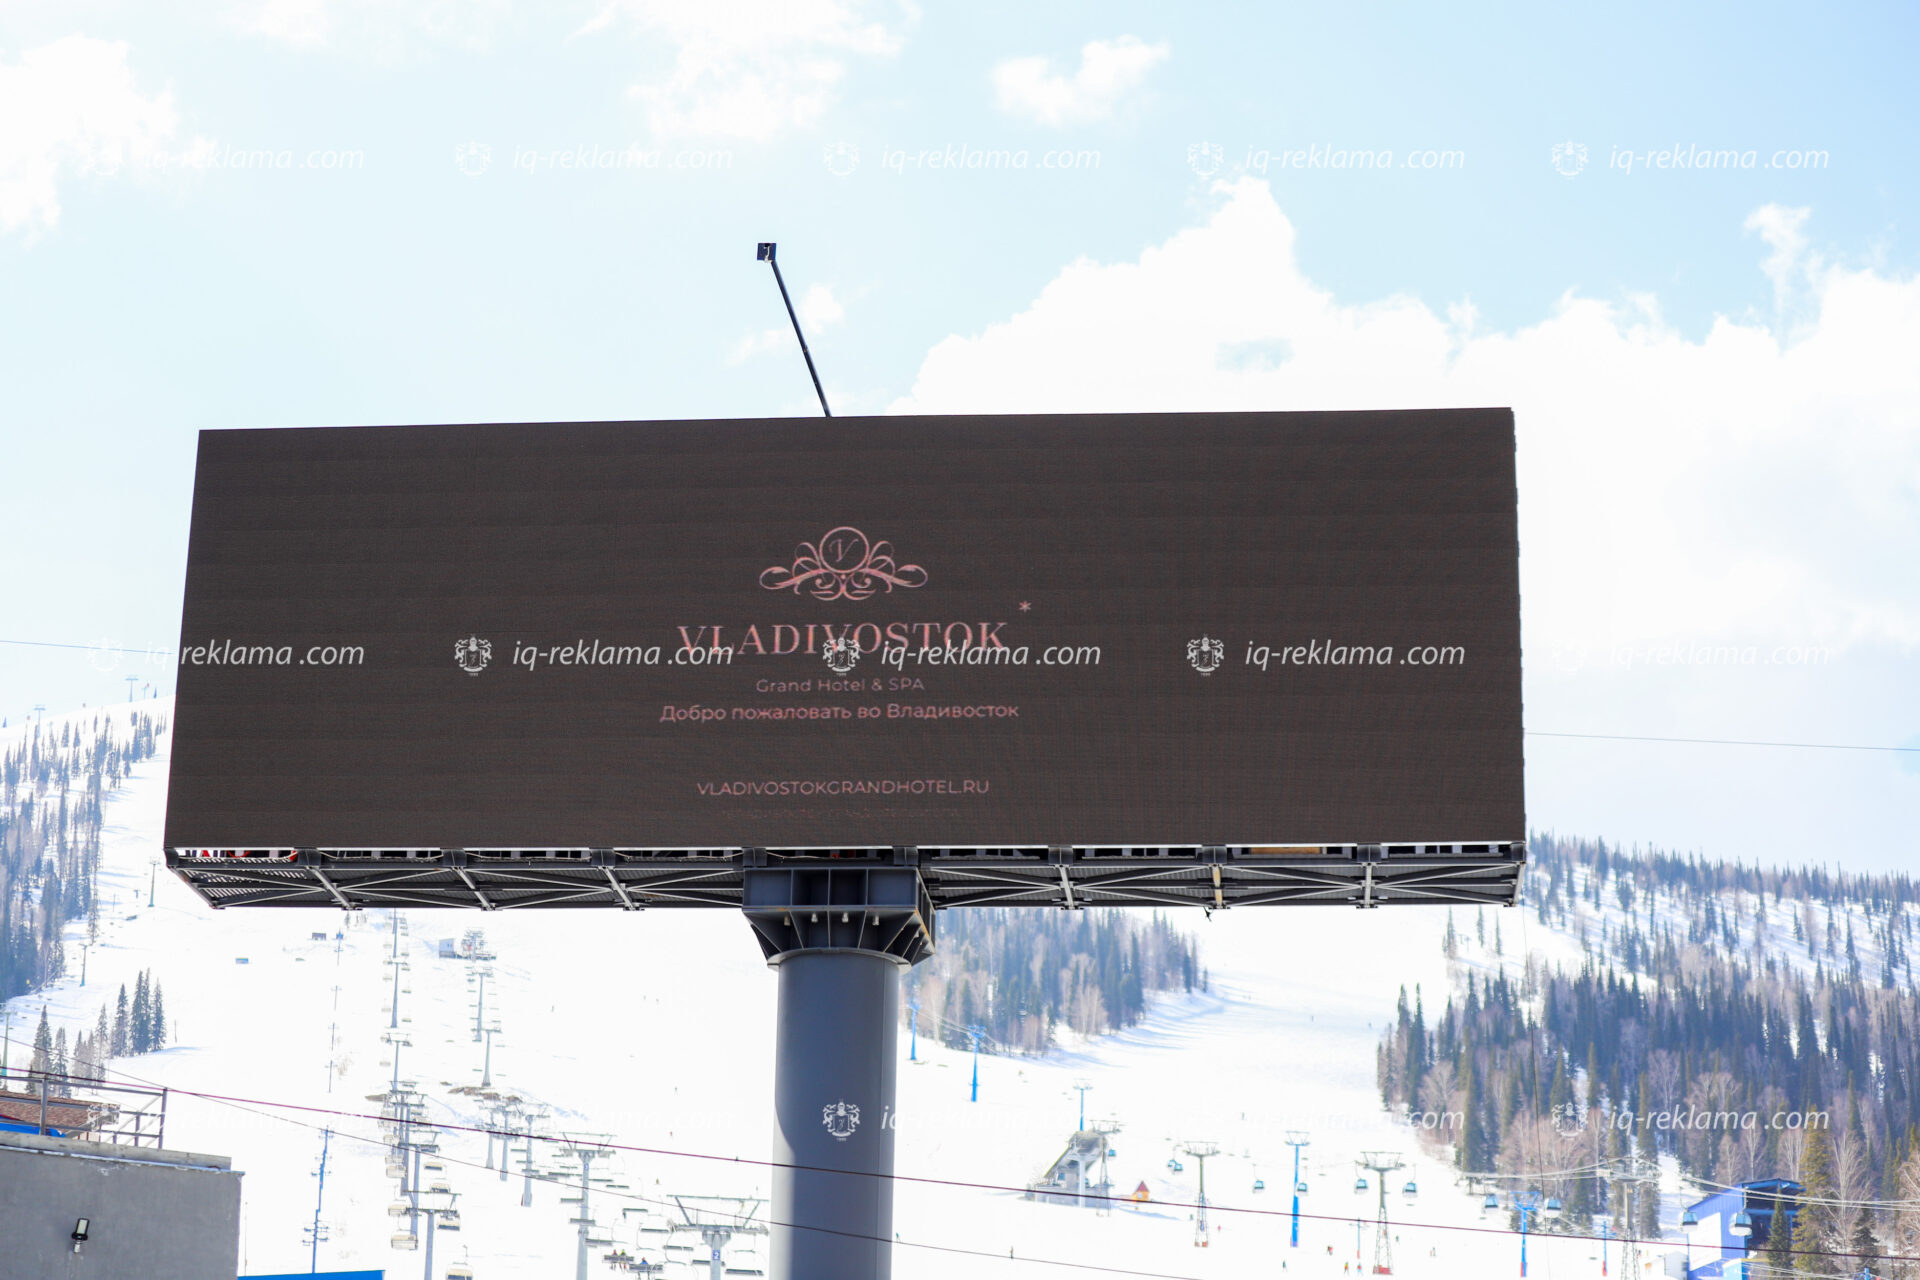 Наружная реклама на видеоэкранах на горнолыжном курорте «Шерегеш» элитных отелей Владивостока